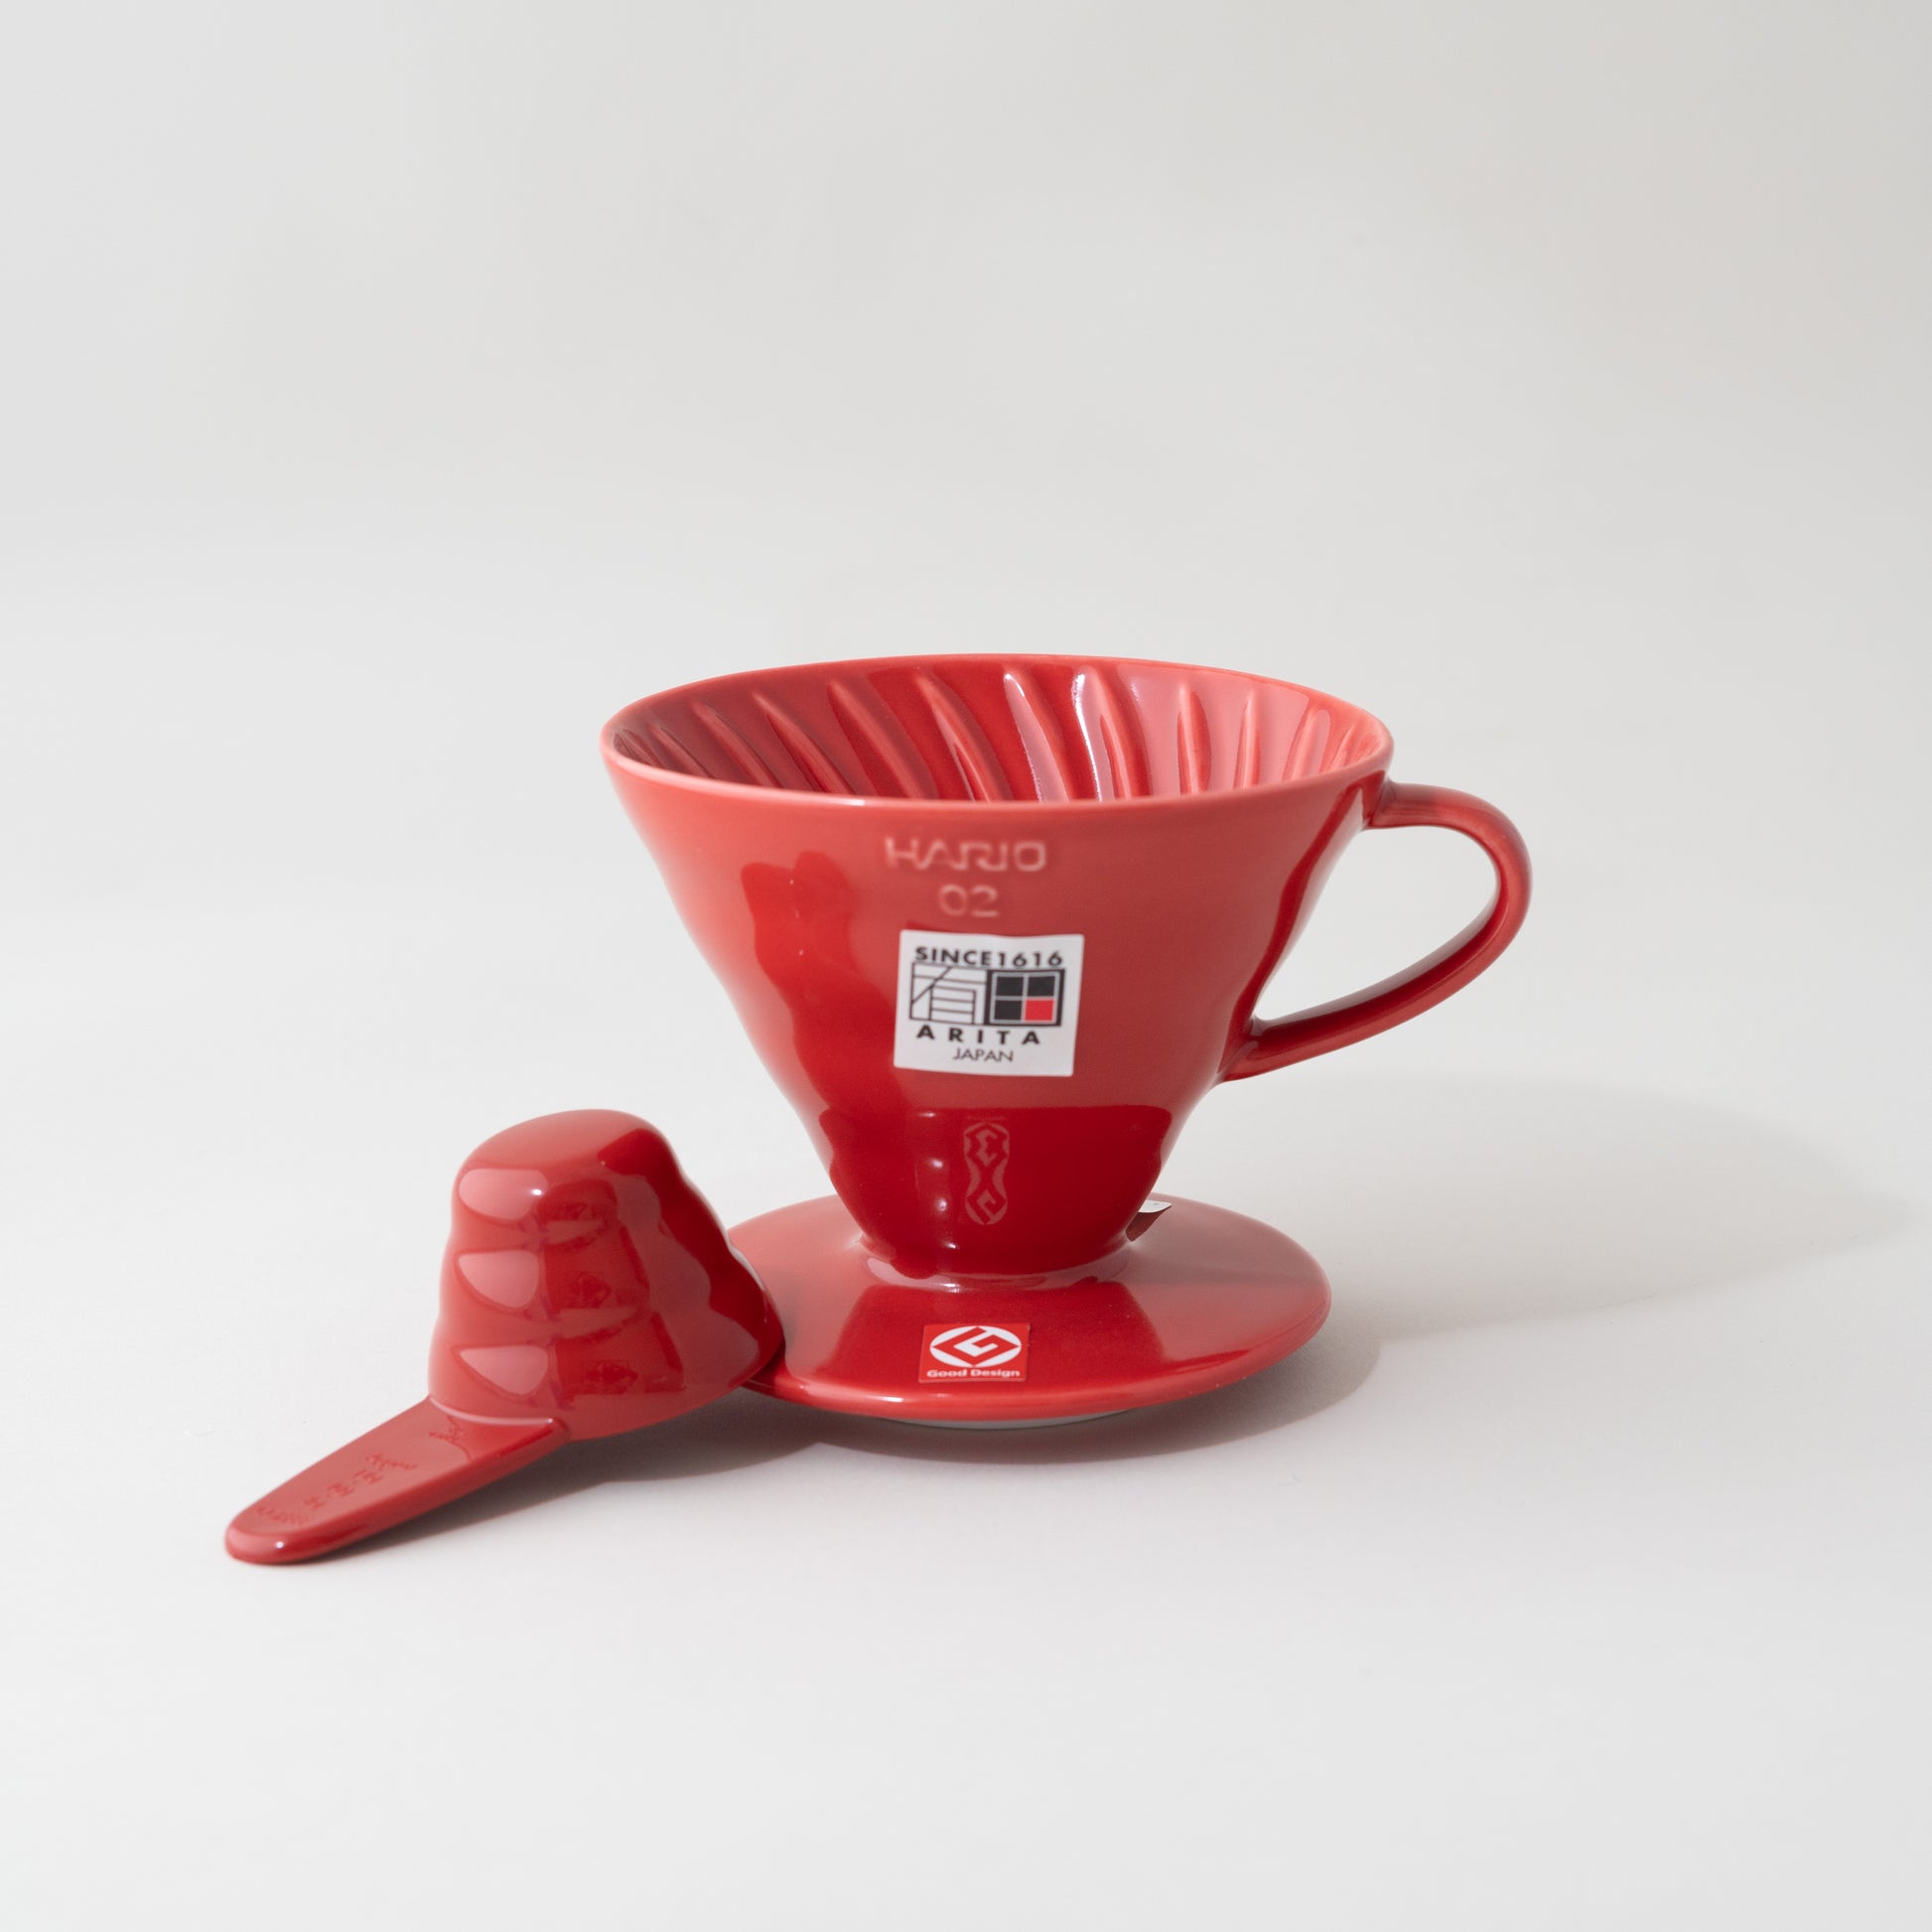 Hario Ceramic v60 02 Red Coffee Dripper